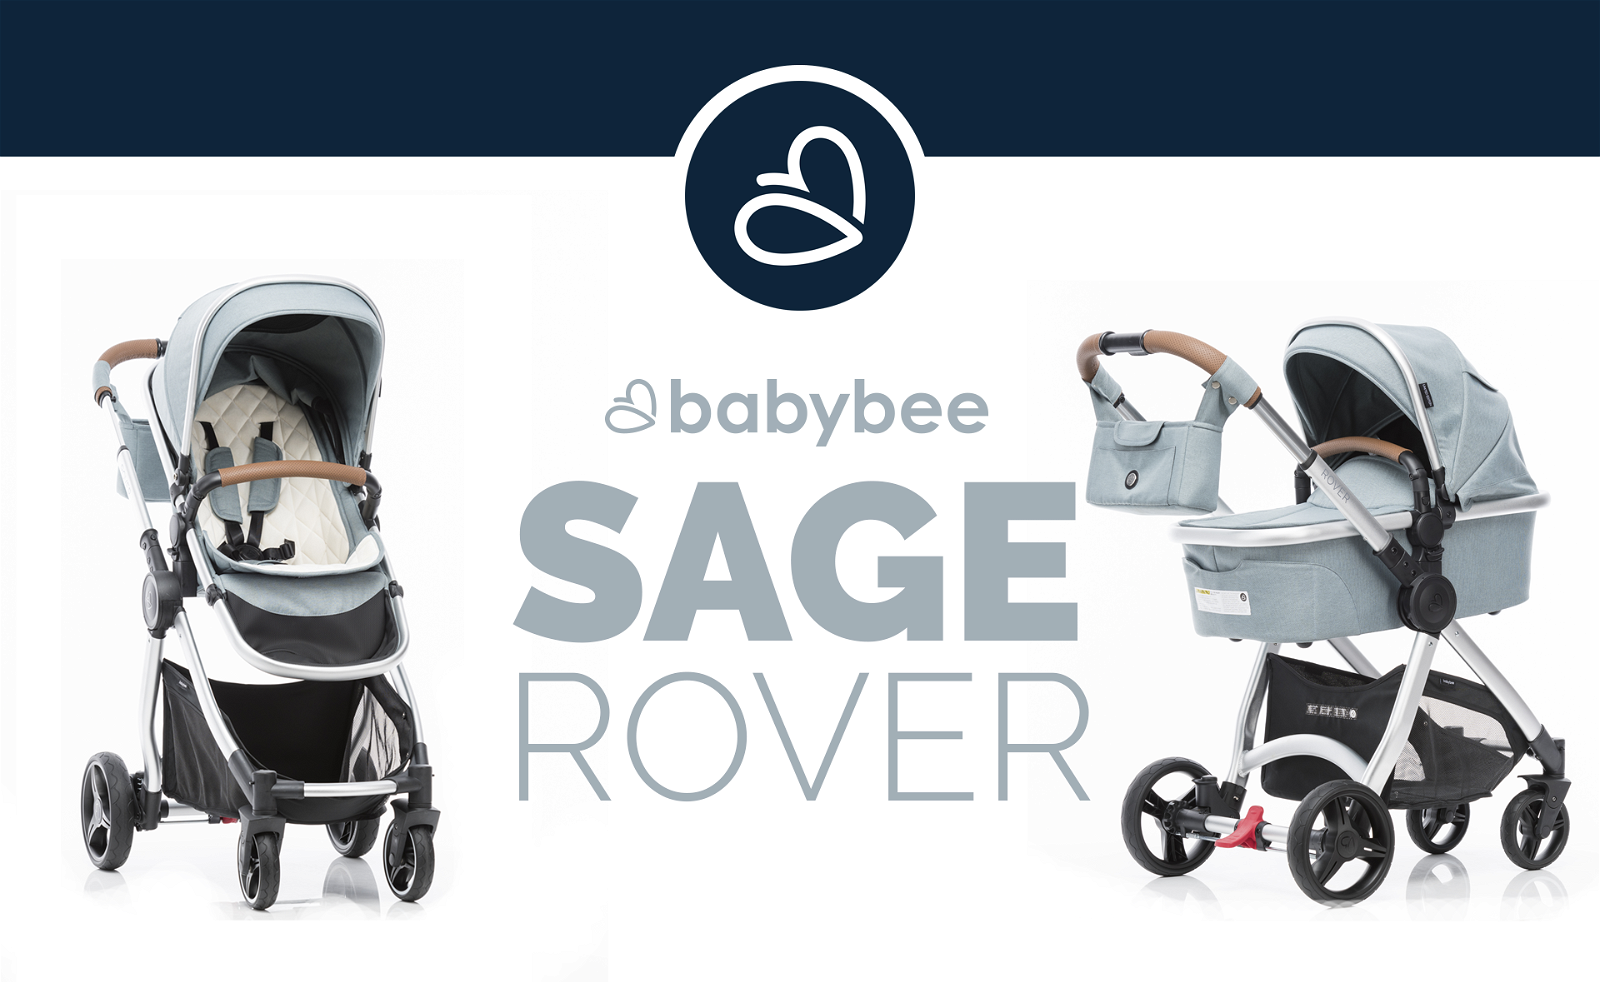 babybee rover